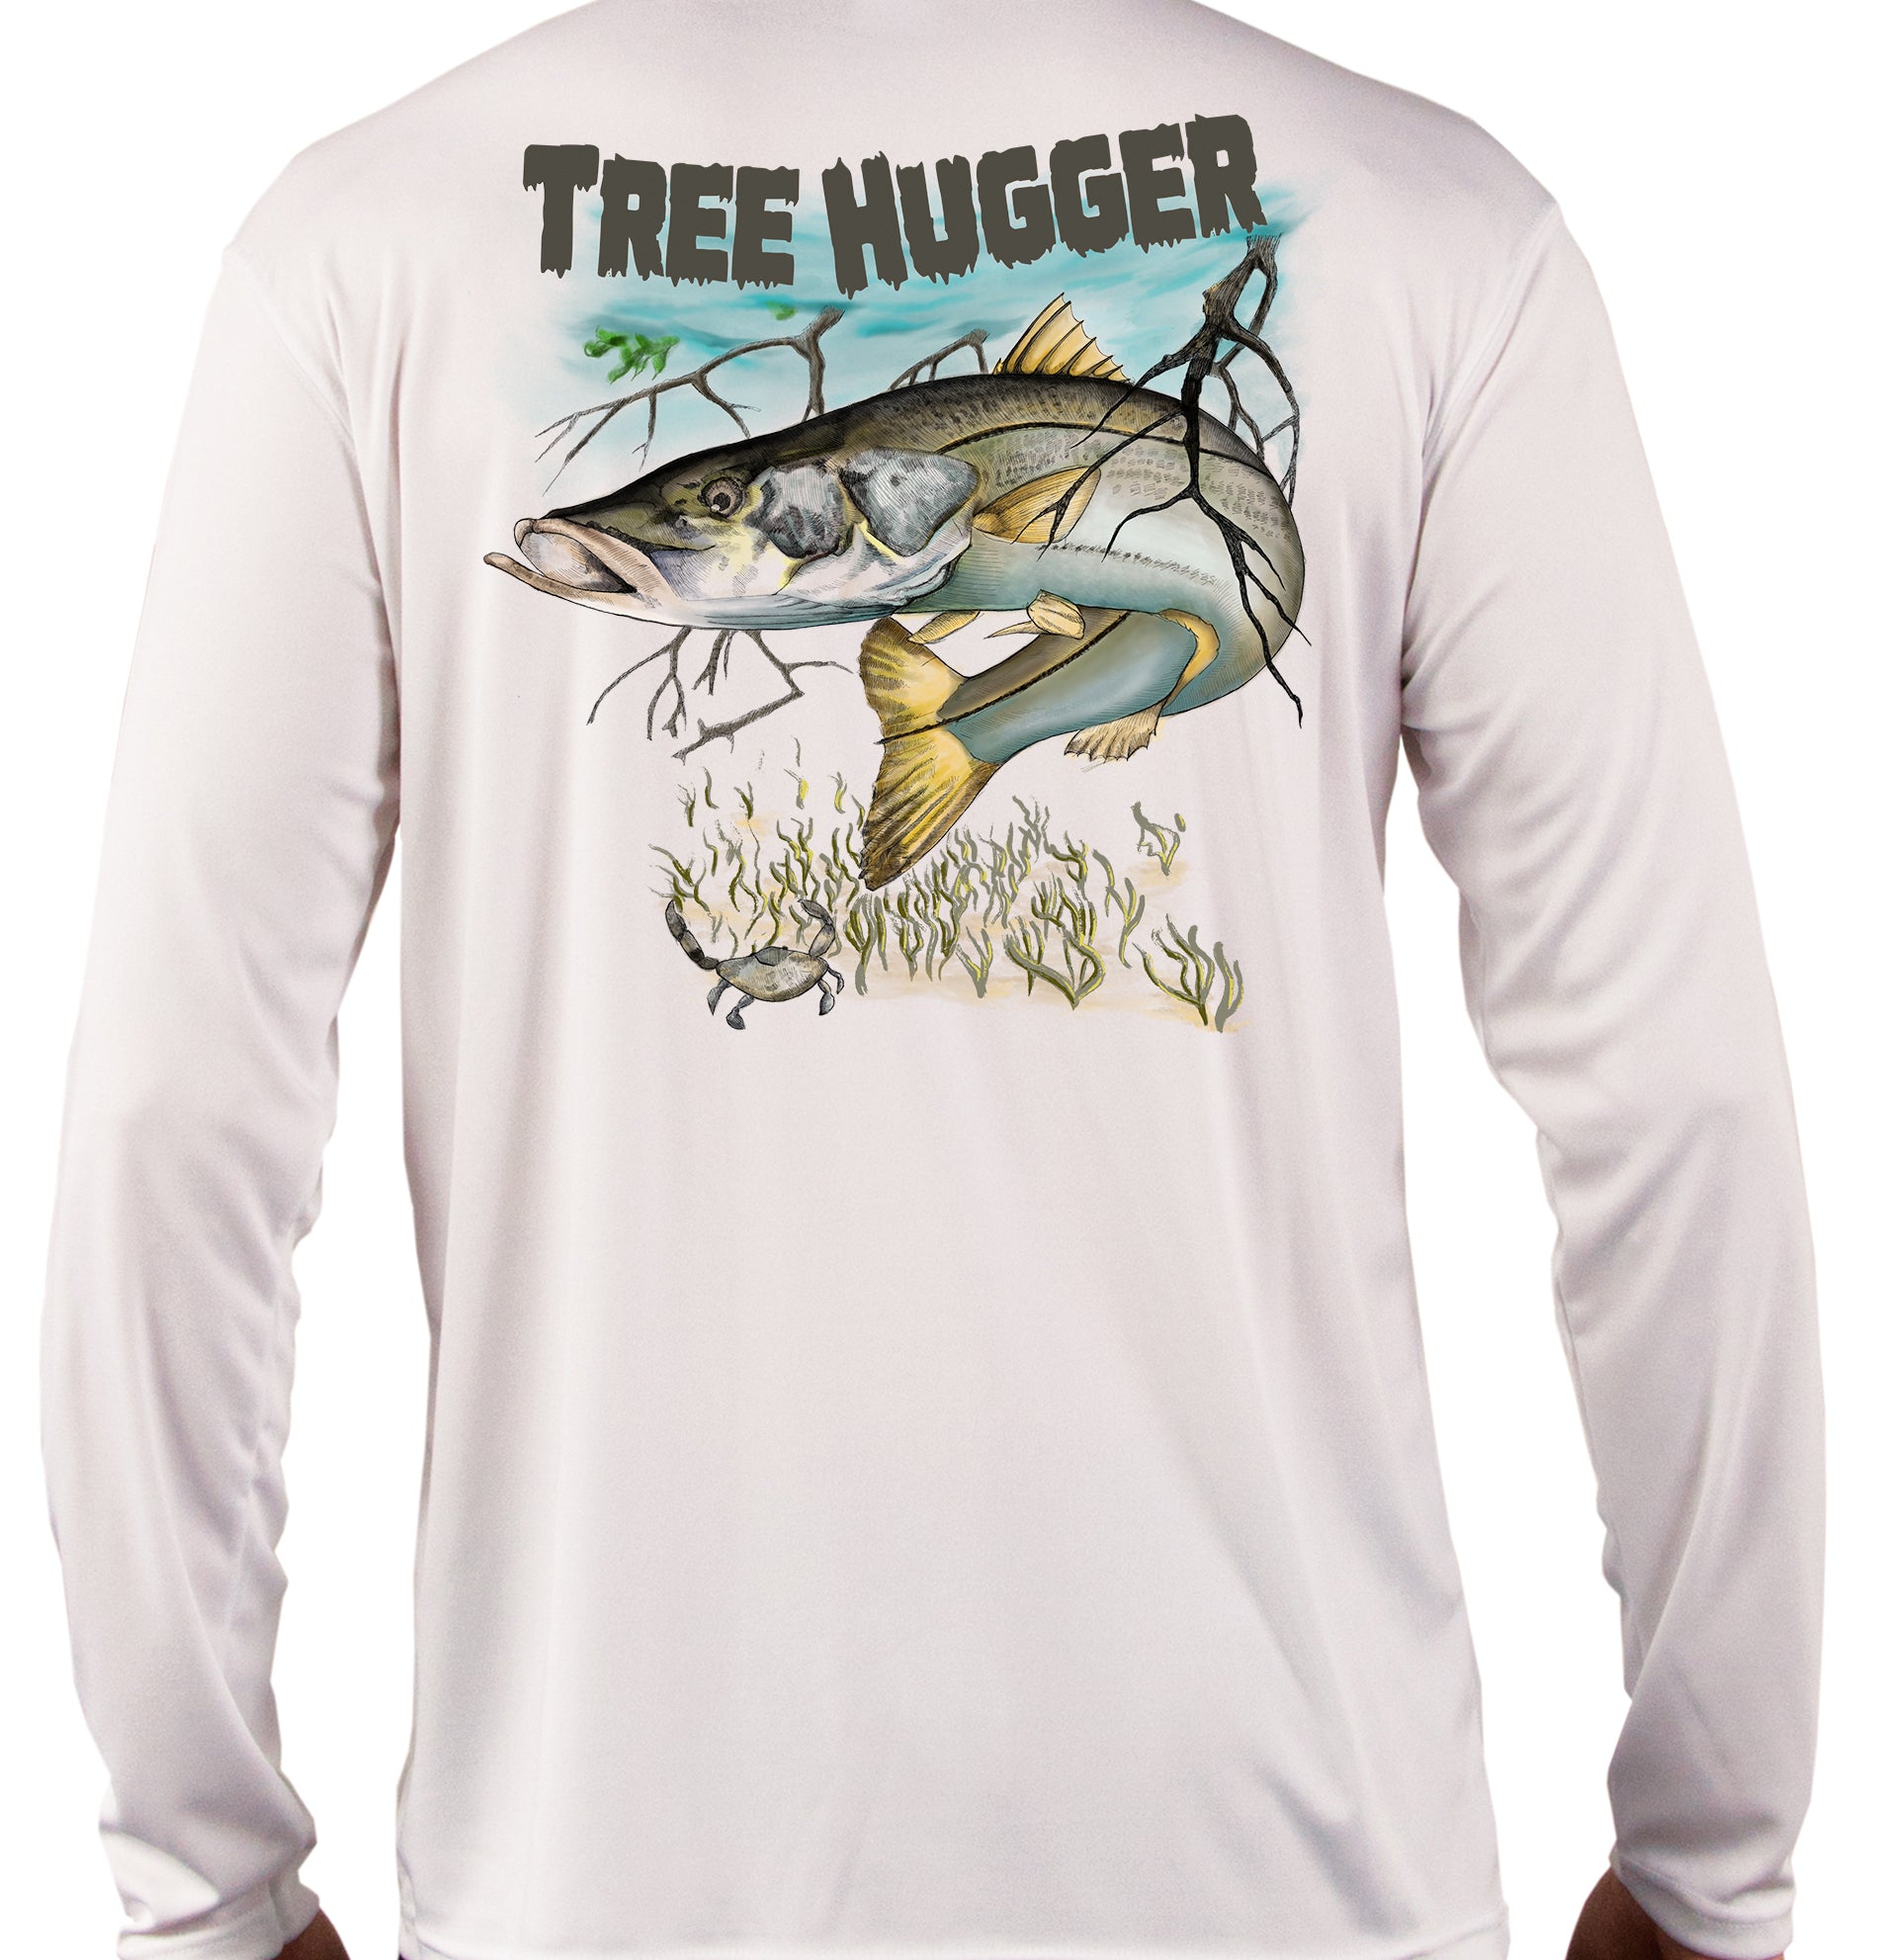 http://www.skifflife.us/cdn/shop/files/tree-hugger-fishing-shirt-white.jpg?v=1683669139